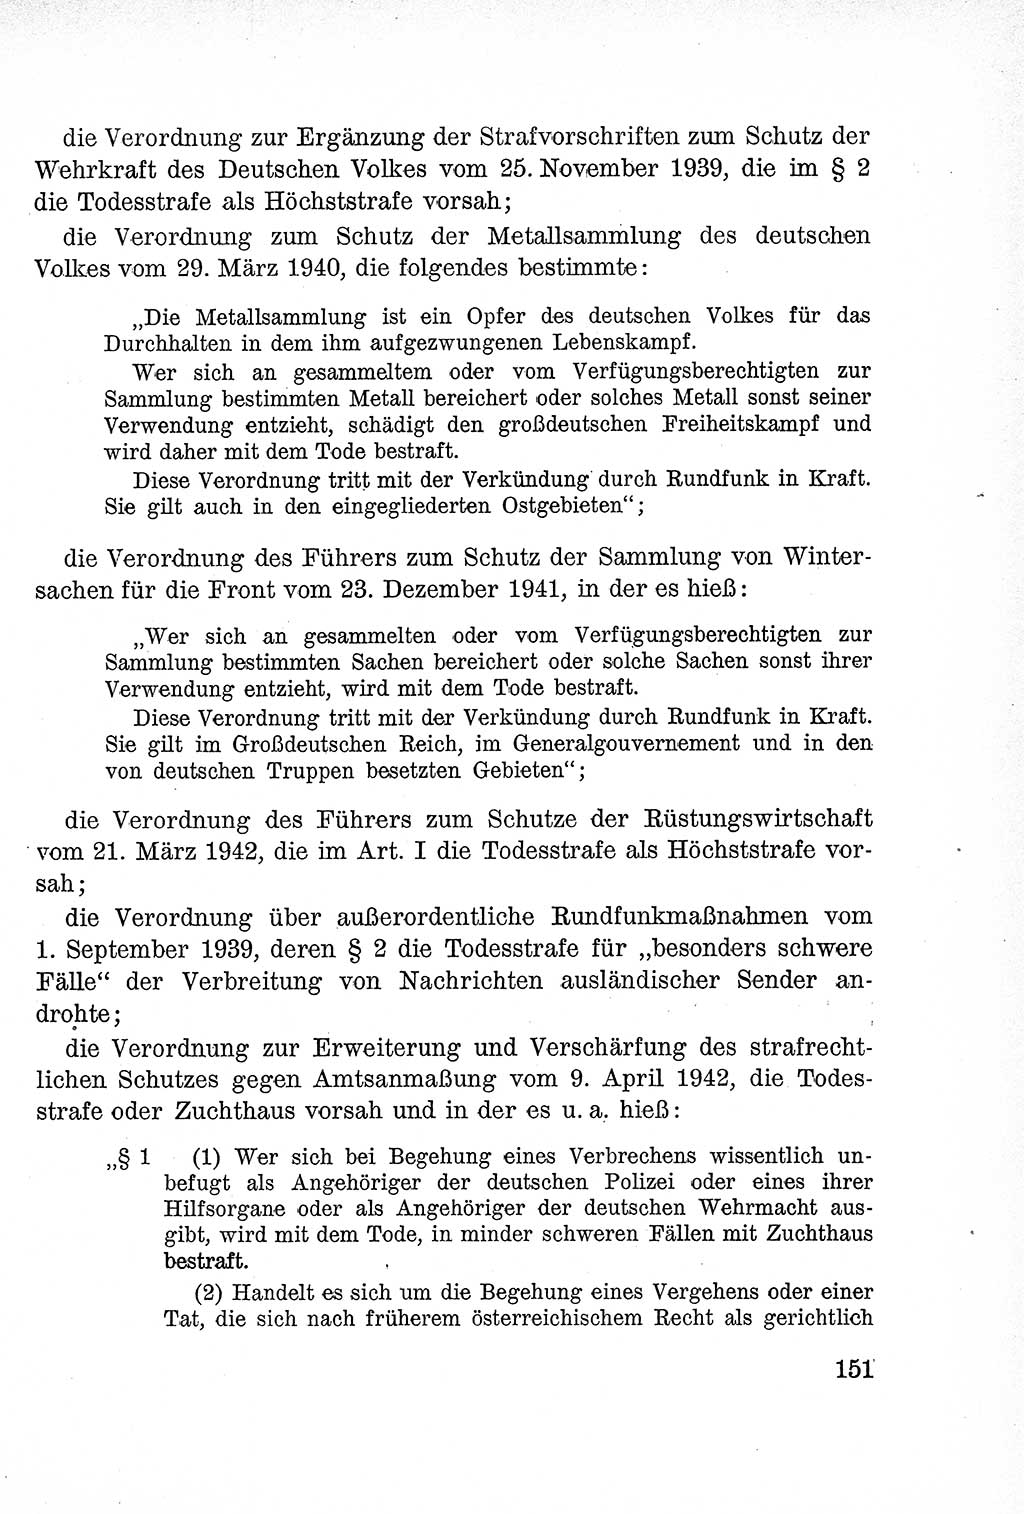 Lehrbuch des Strafrechts der Deutschen Demokratischen Republik (DDR), Allgemeiner Teil 1957, Seite 151 (Lb. Strafr. DDR AT 1957, S. 151)